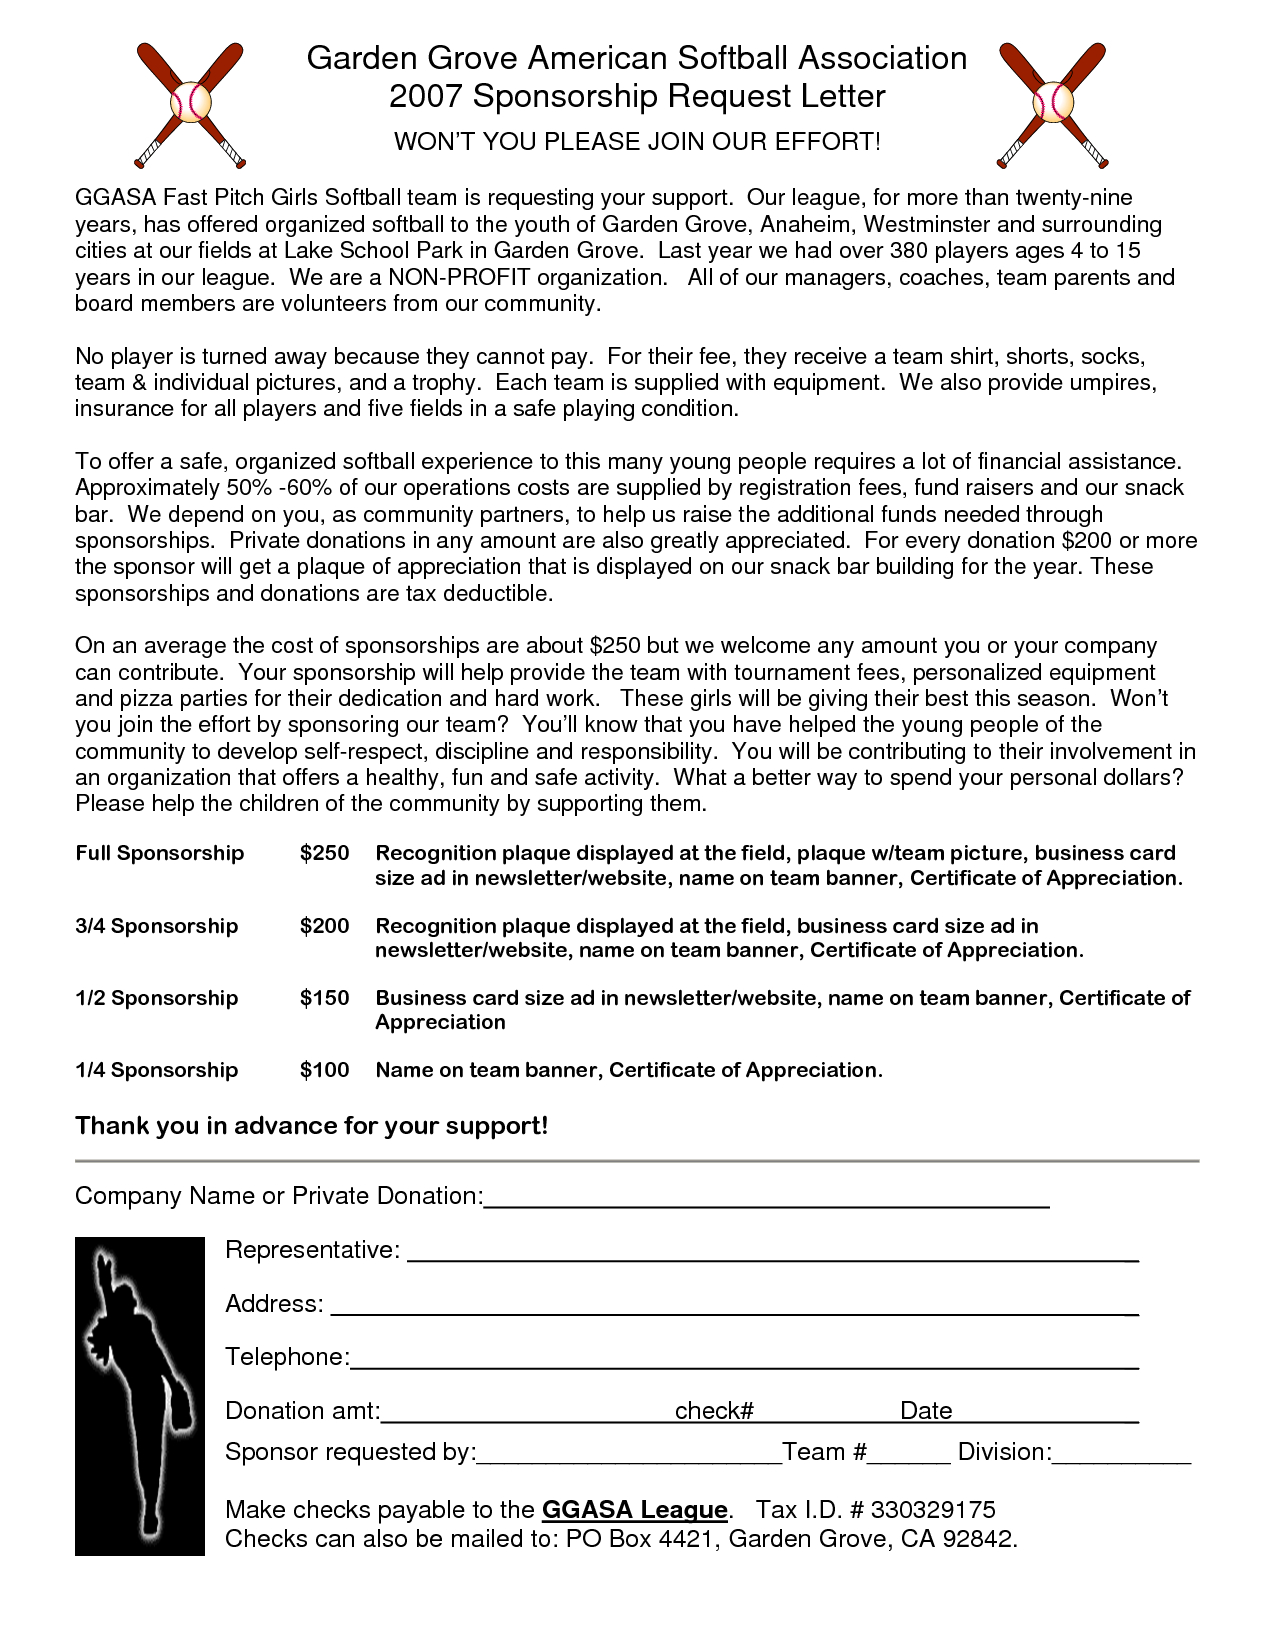 Baseball Sponsorship Letter Template - Sponsorship form Template